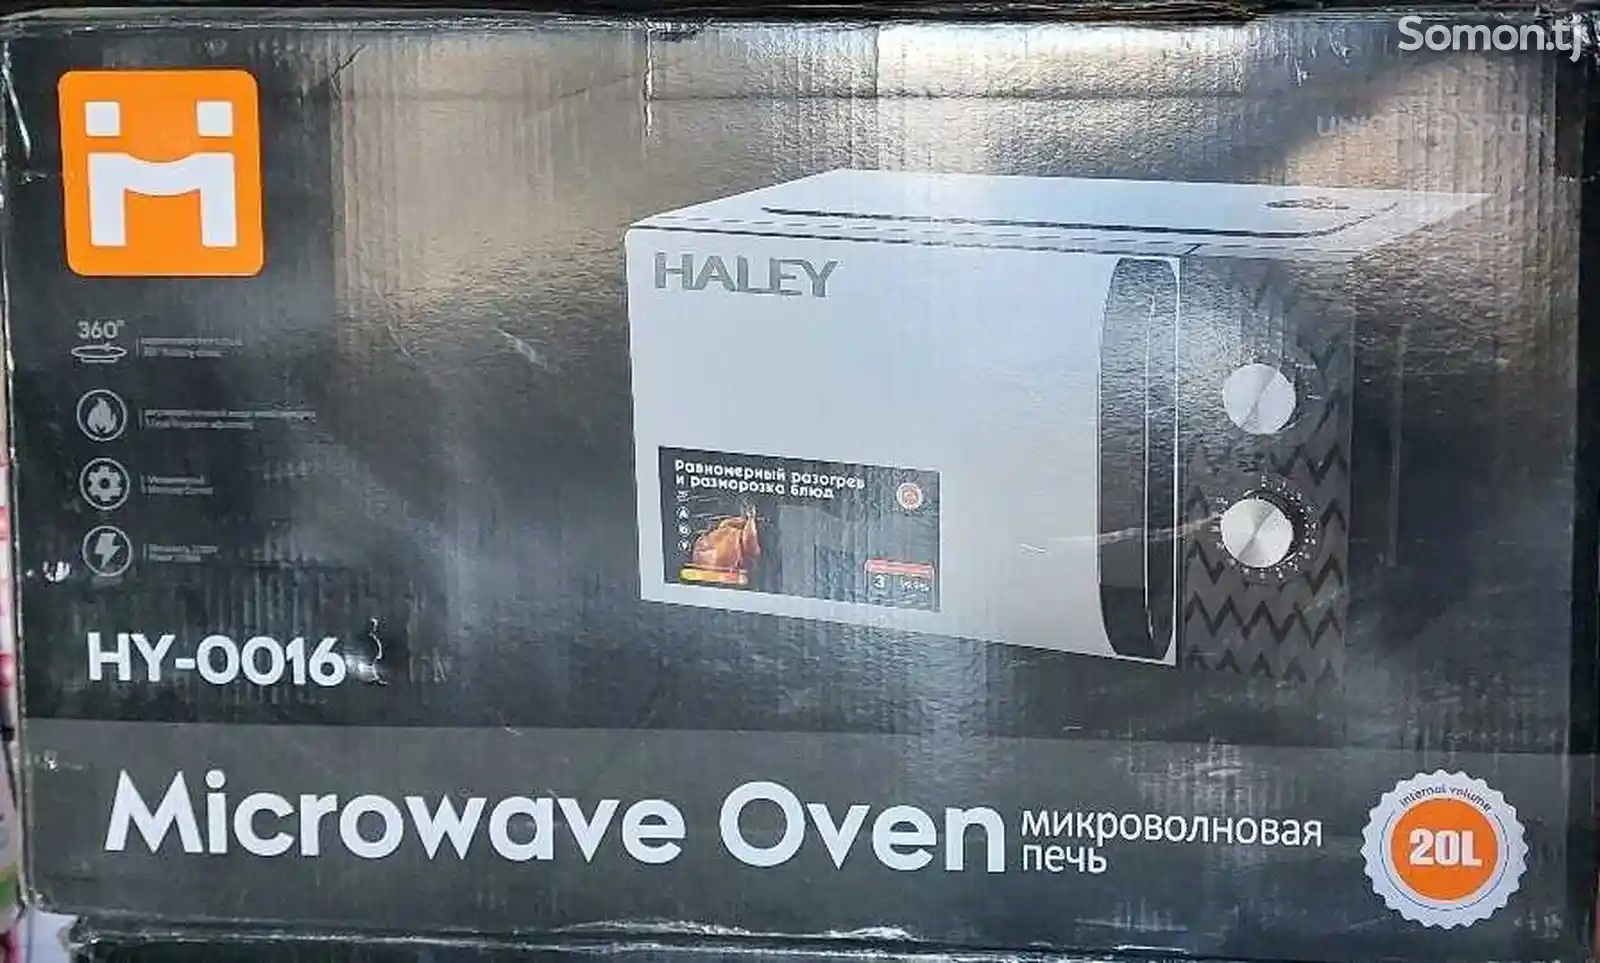 Микроволновая печь Haley-0016-3